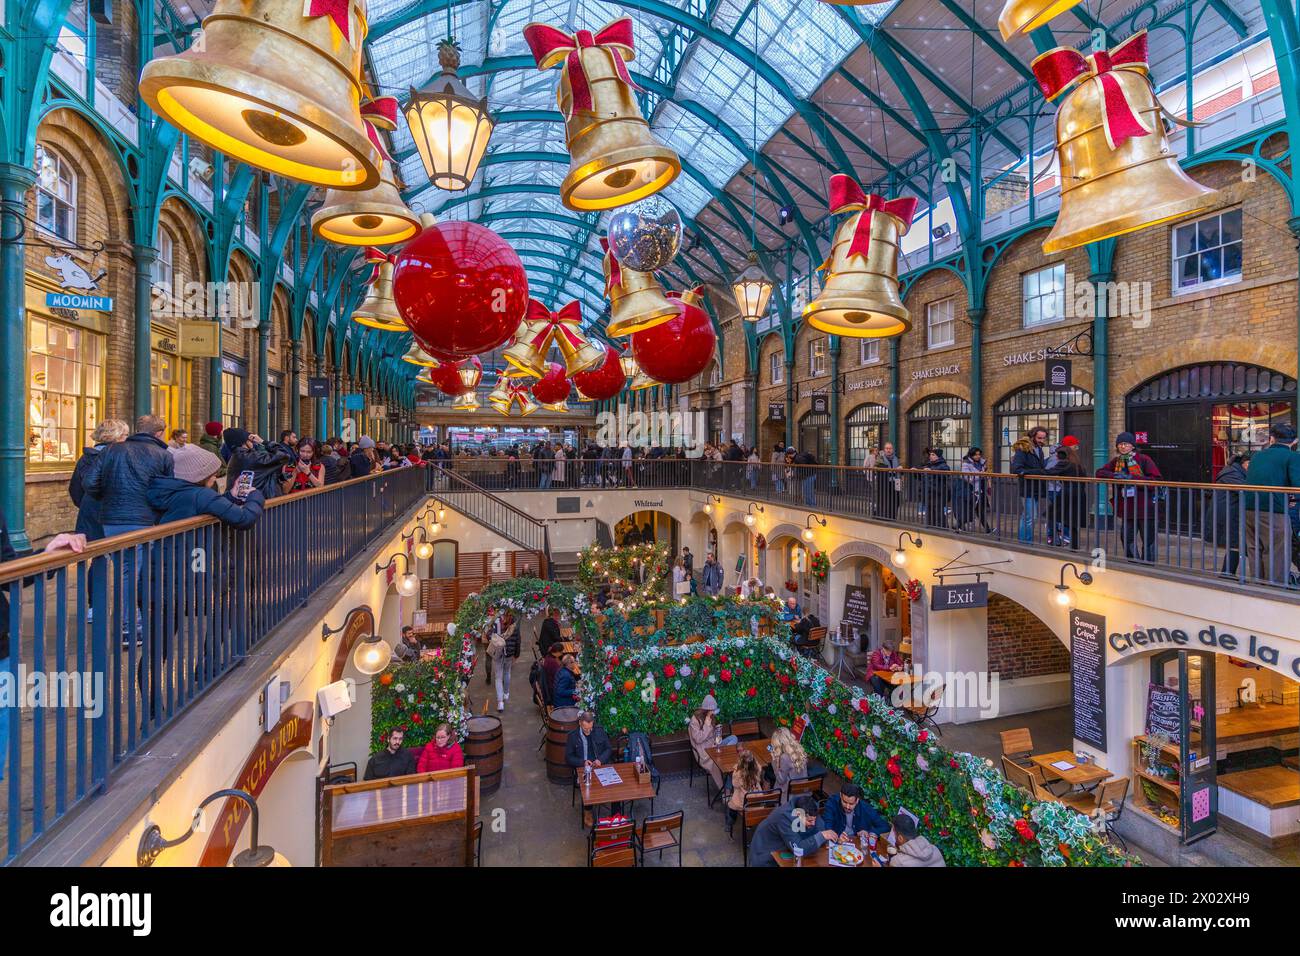 Vue de décorations de Noël dans le marché Apple, Covent Garden, Londres, Angleterre, Royaume-Uni, Europe Banque D'Images